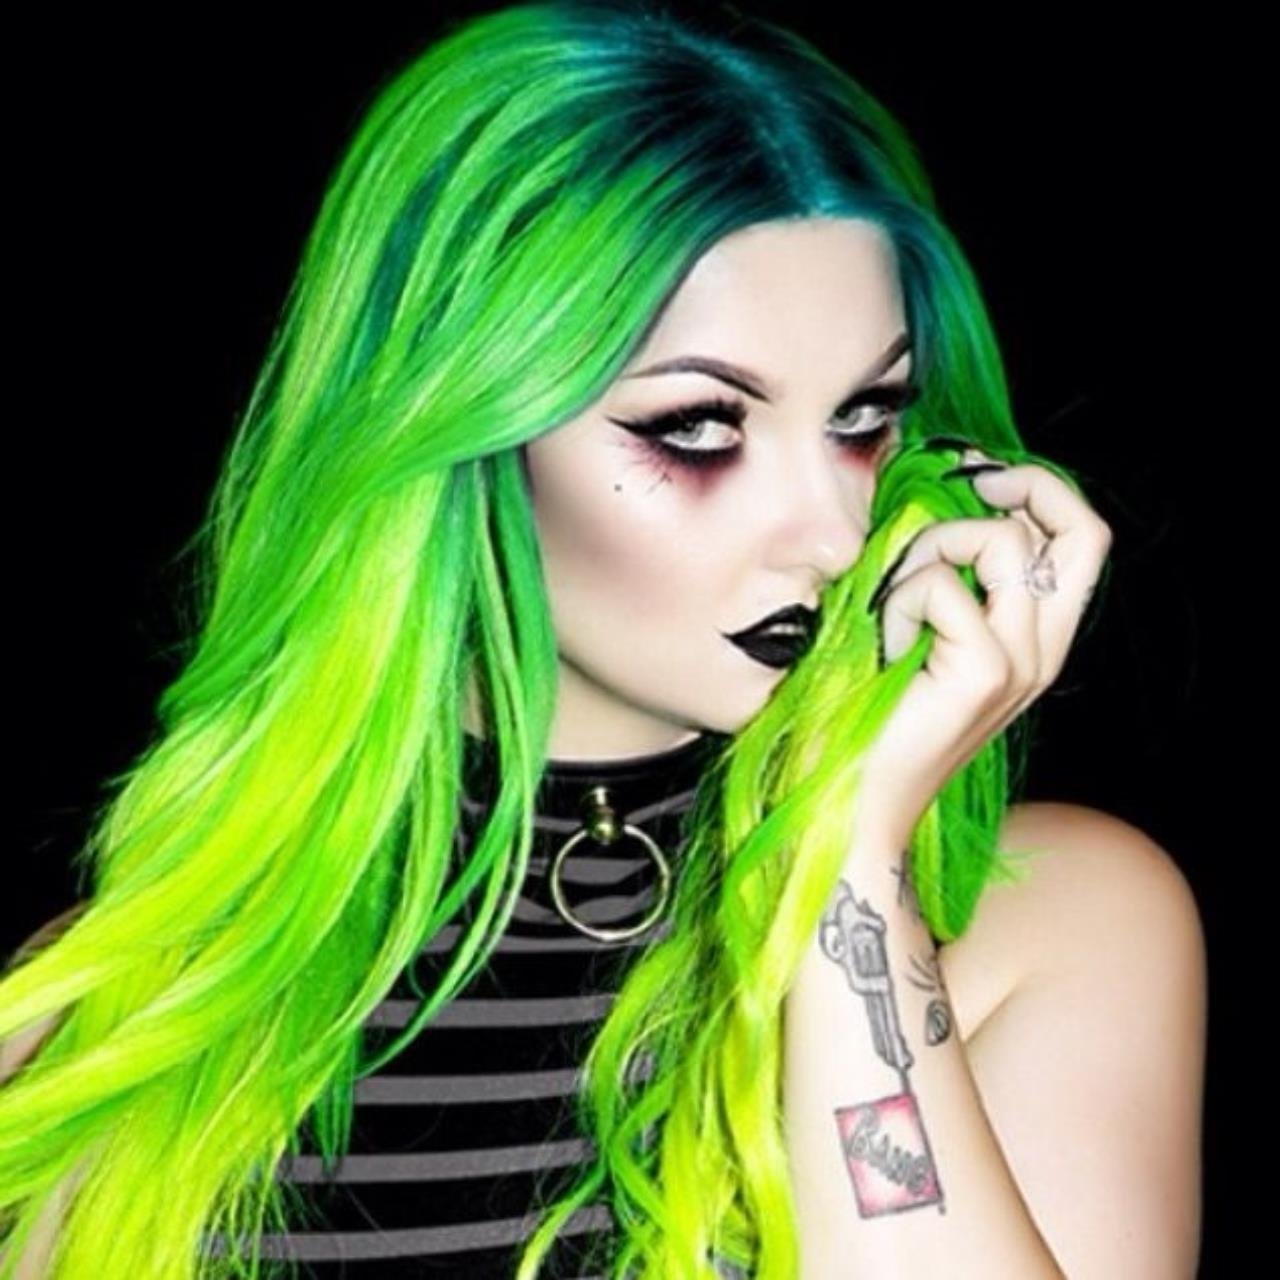 Кисло у девушки. Девушка с зелеными волосами. Кислотно зеленые волосы. Ядовито-зеленый цвет волос.